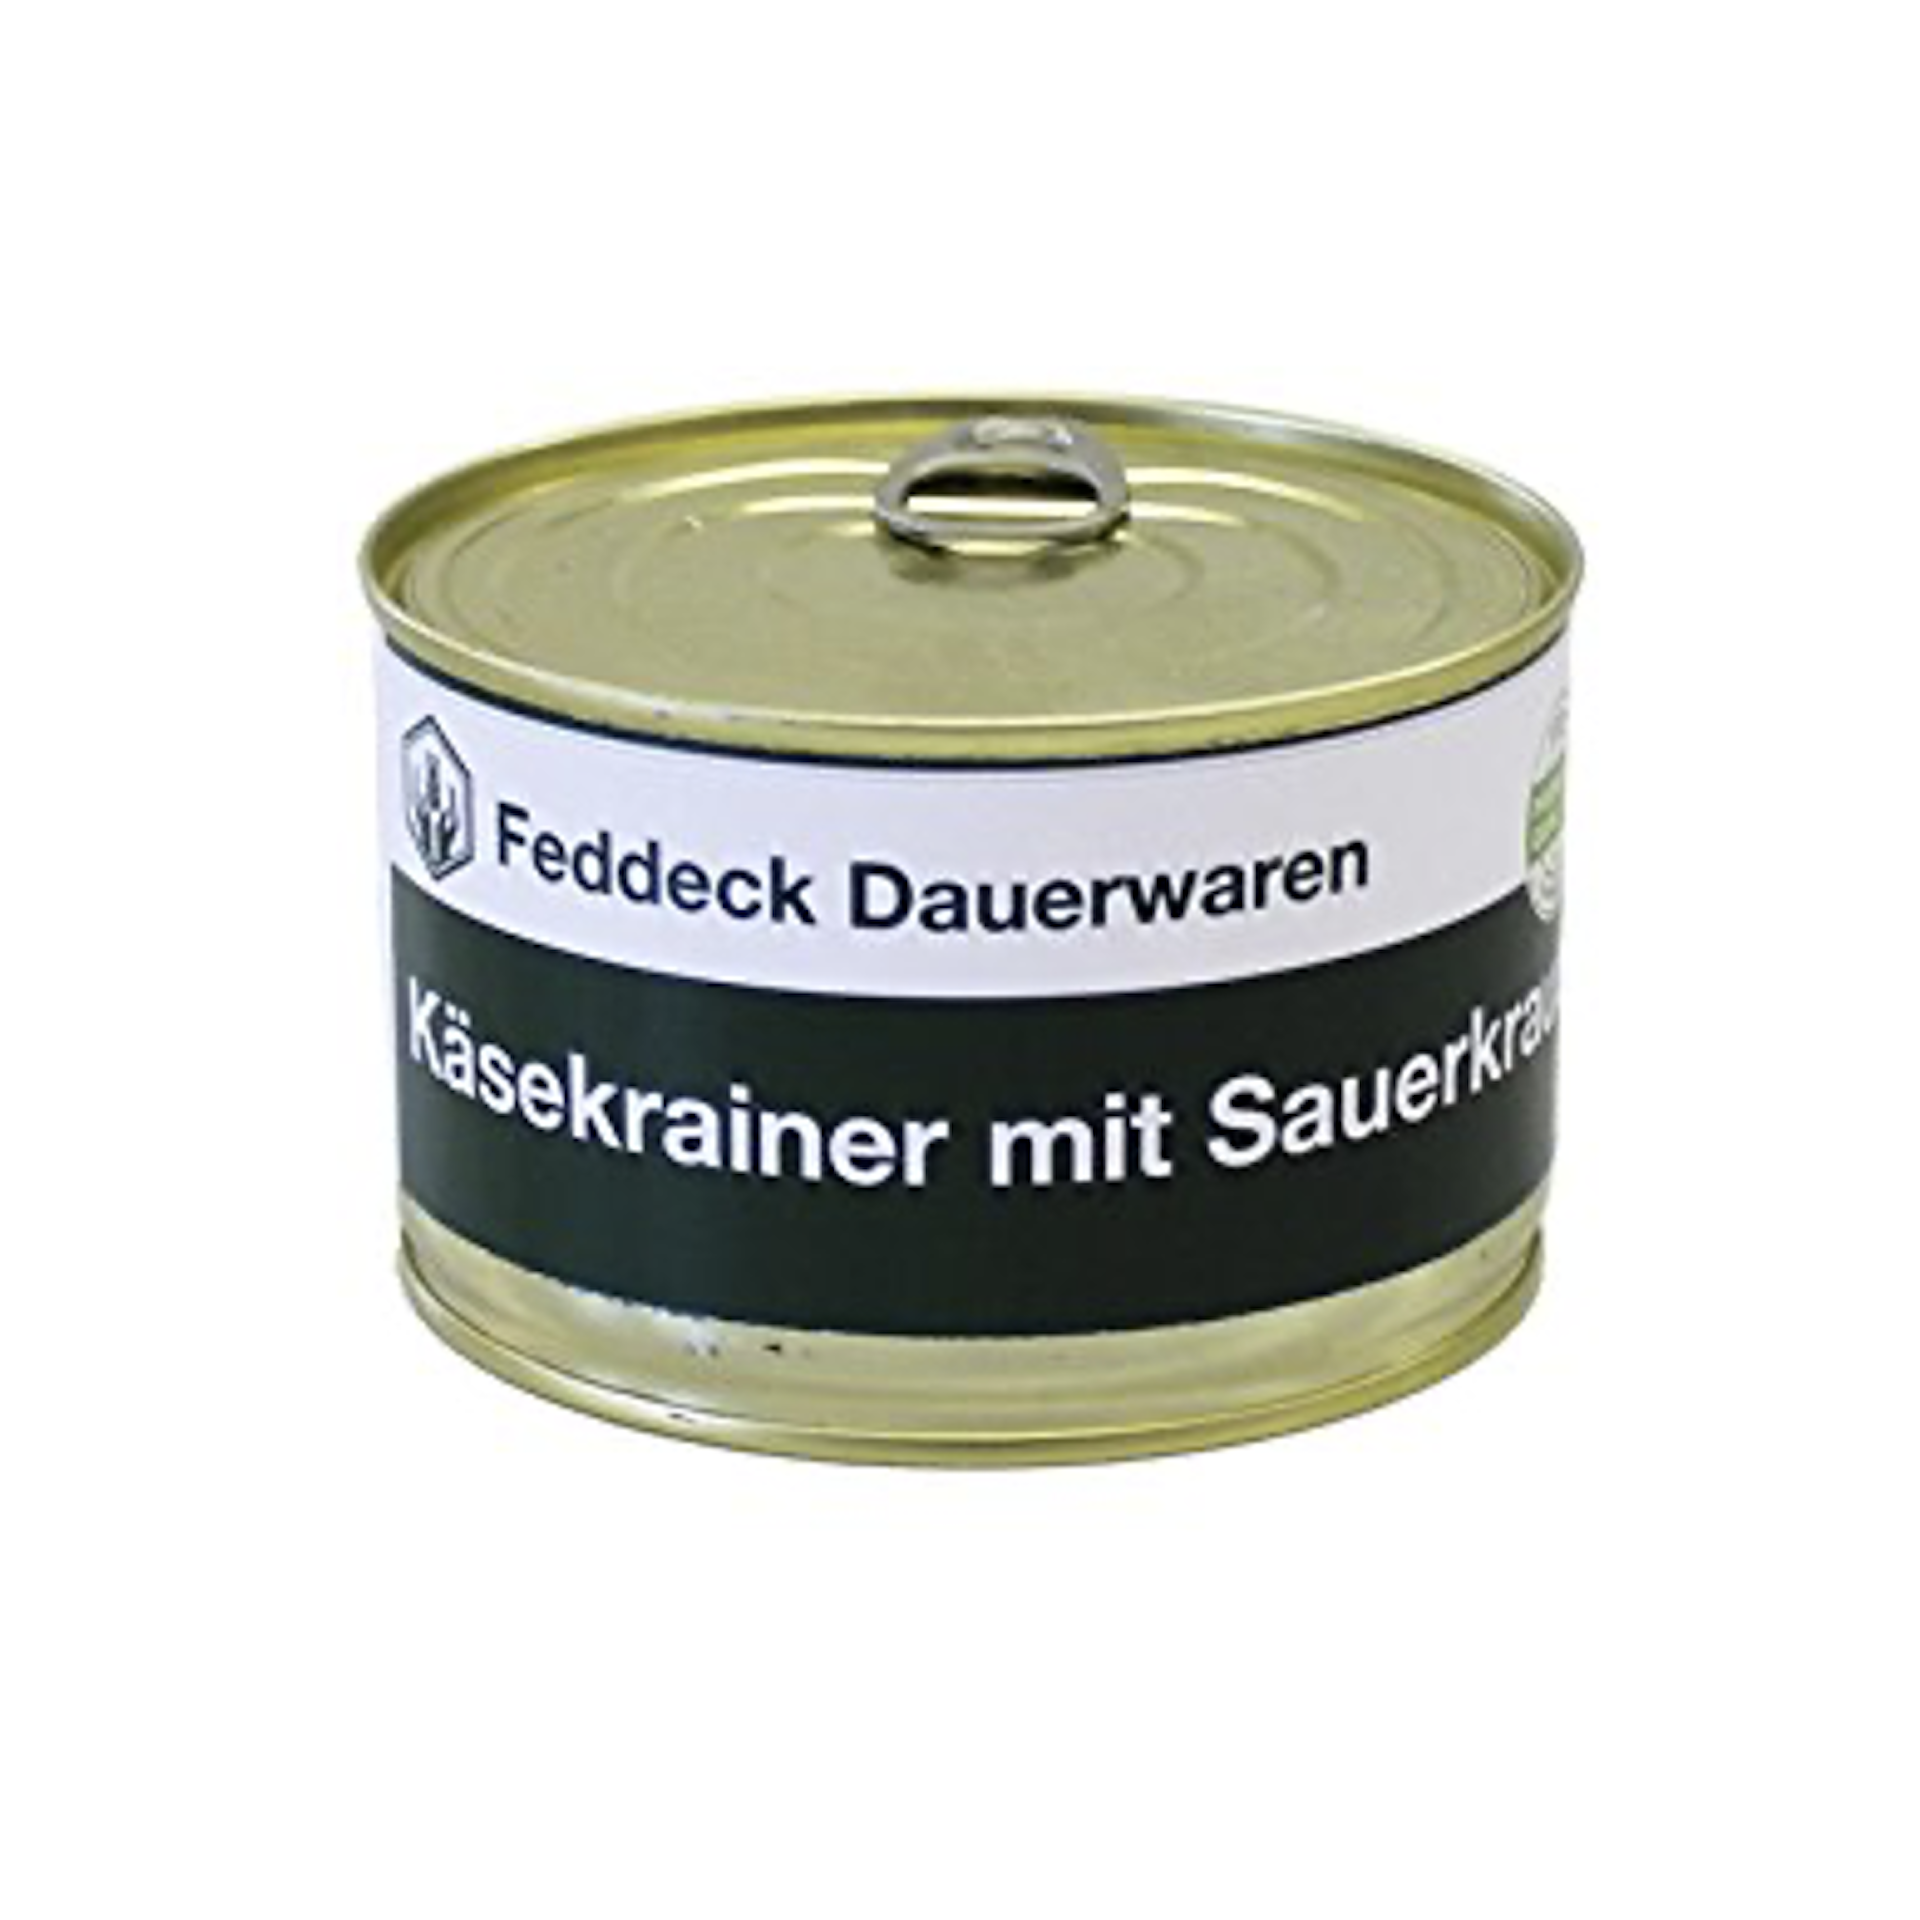 FEDDECK Käsekrainer mit Sauerkraut (400g)